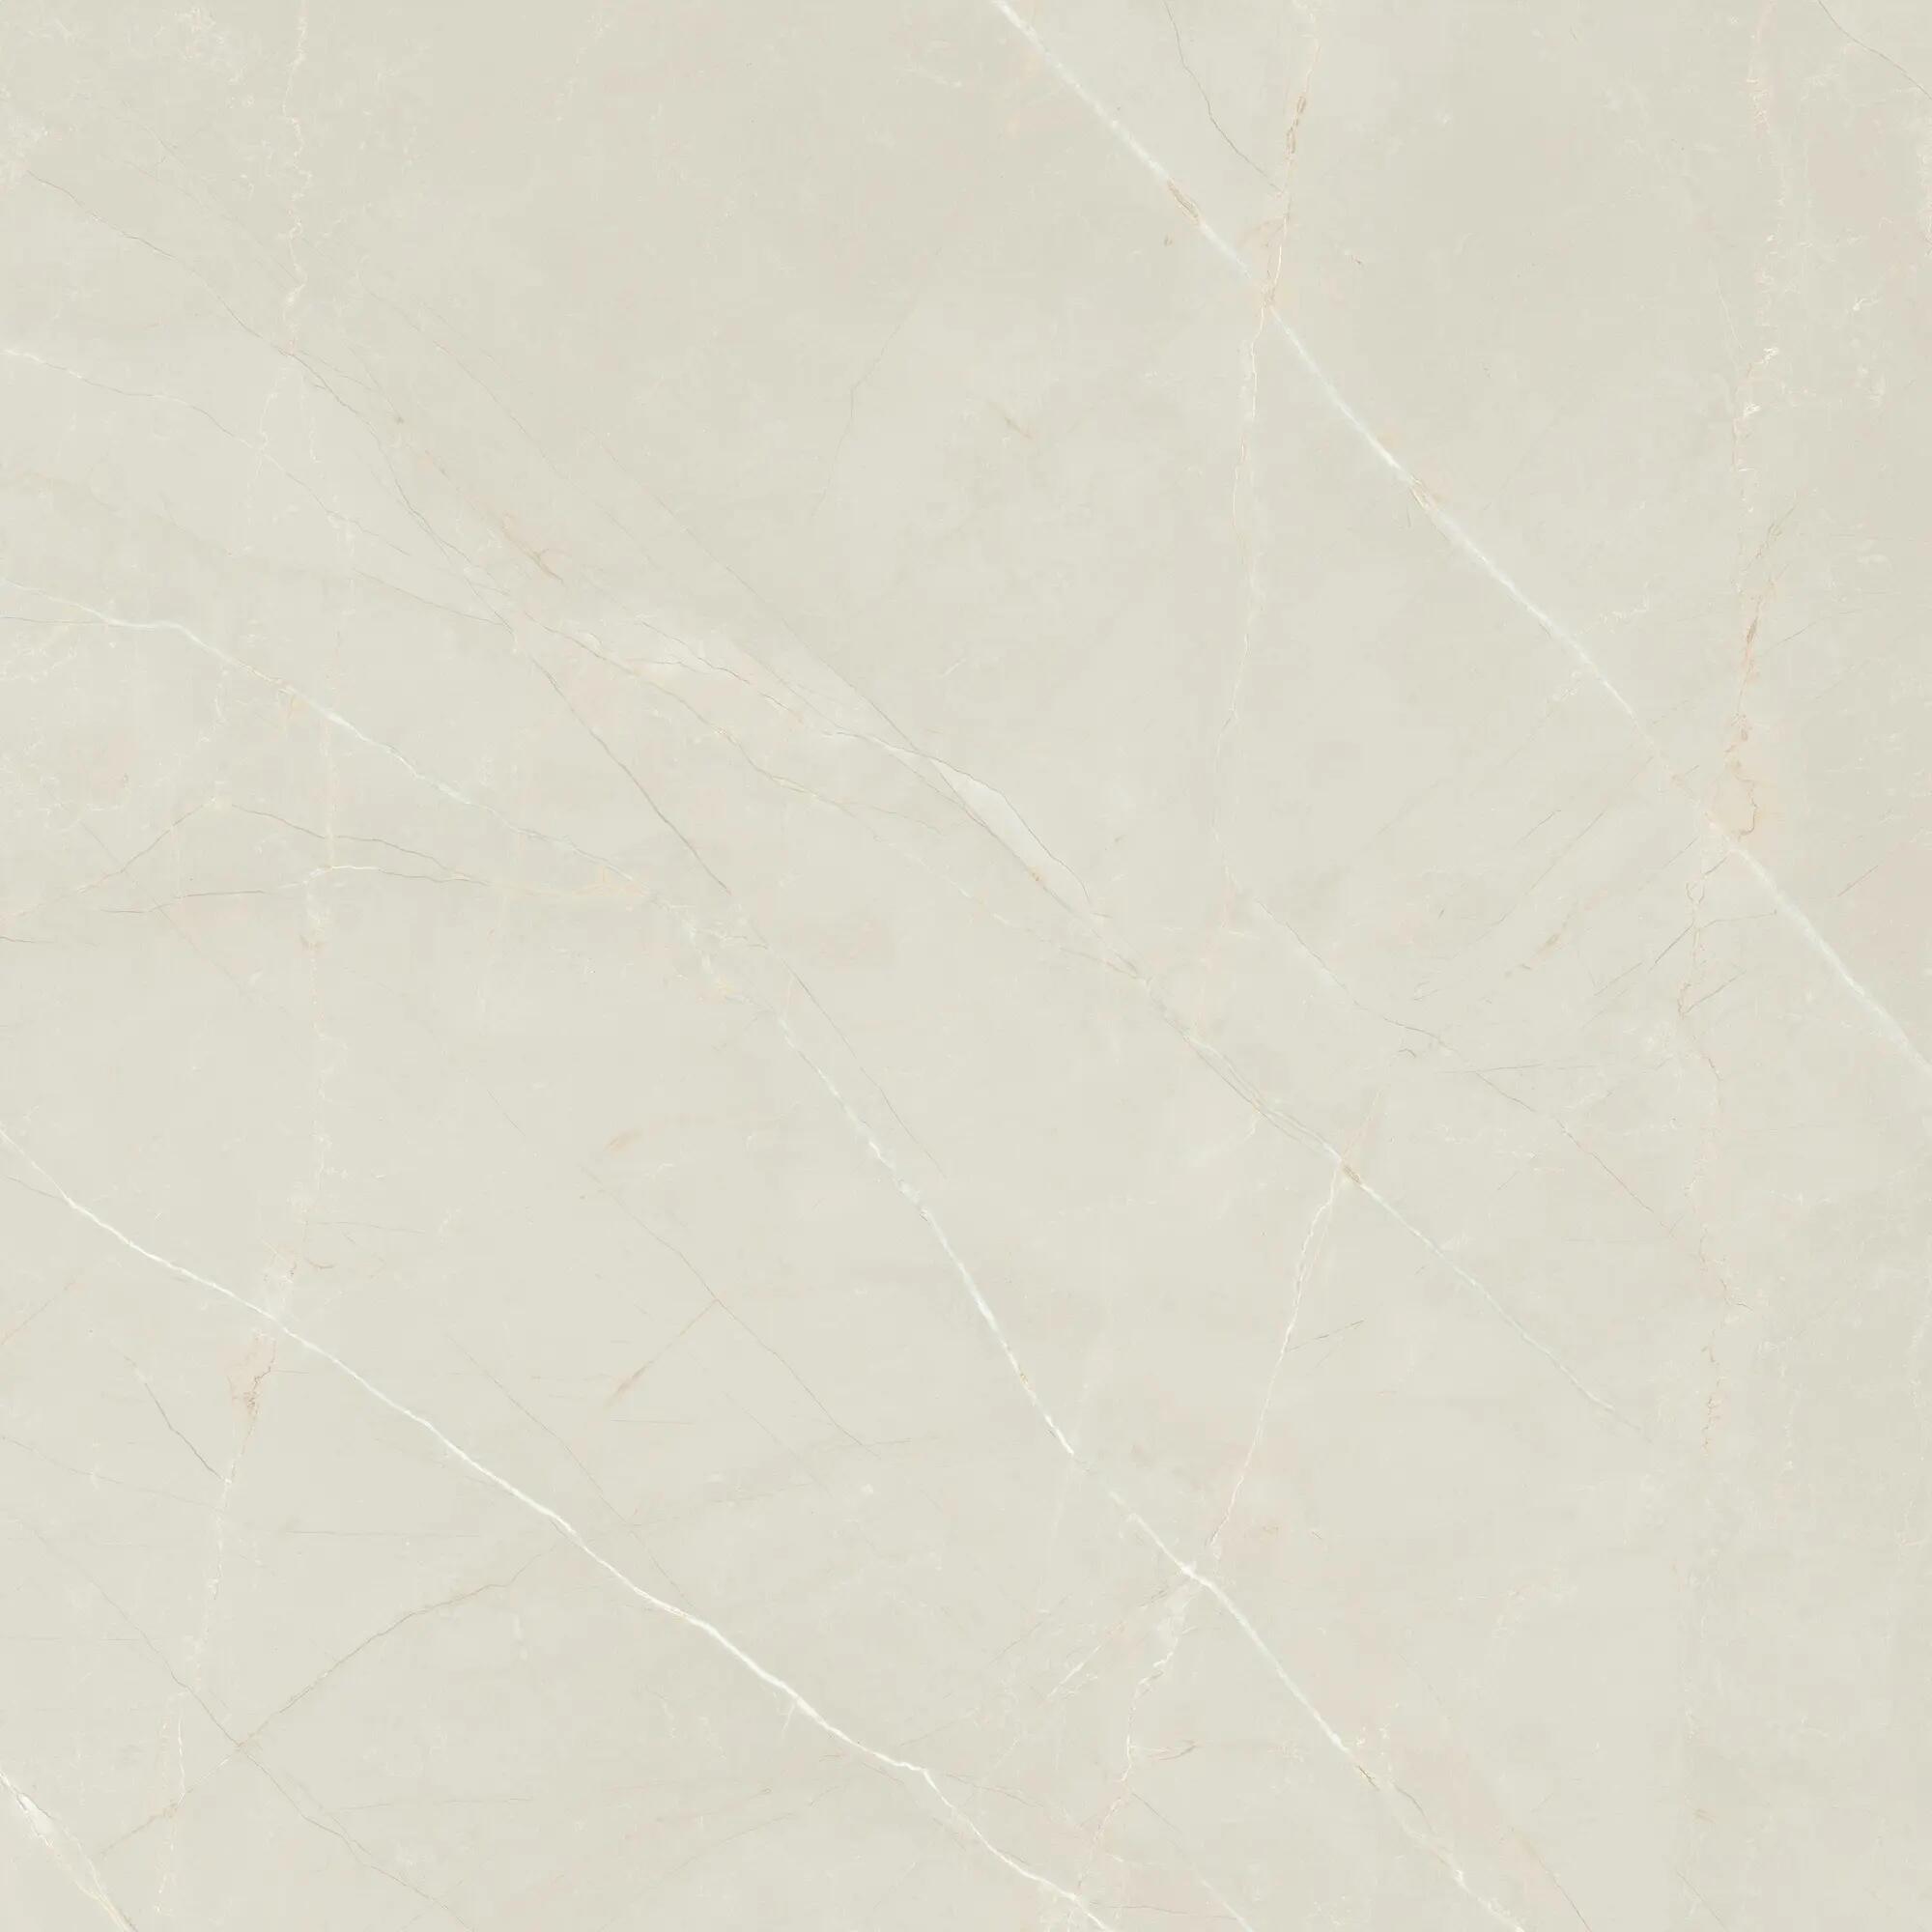 Suelo cerámico marmorea efecto mármol beige 60.5x60.5 cm c1 grespania